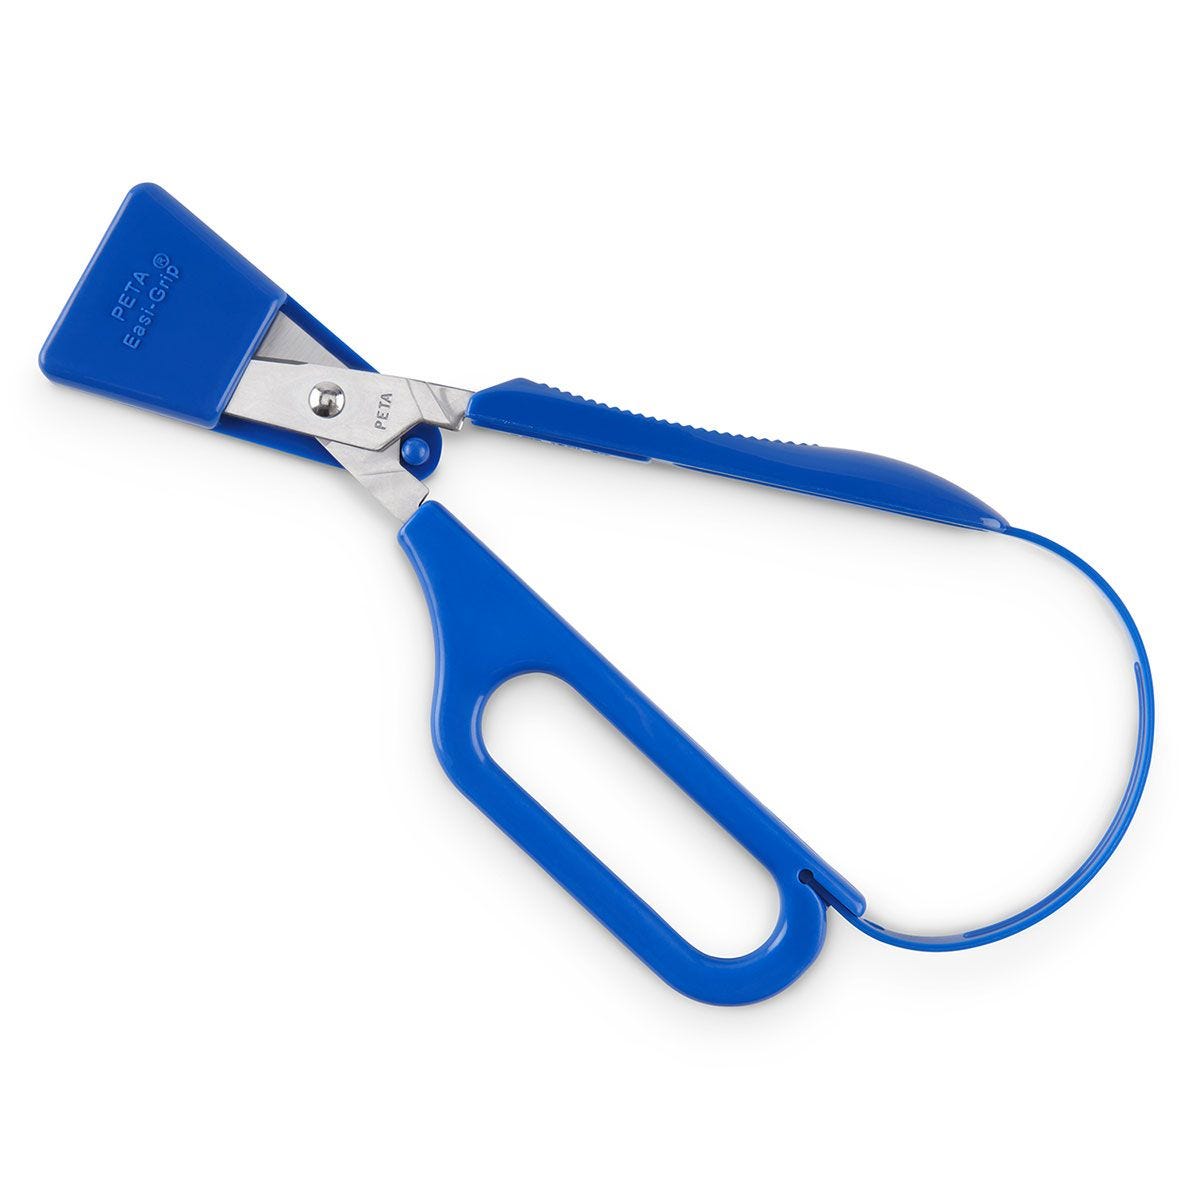 Long Loop Scissors - Peta